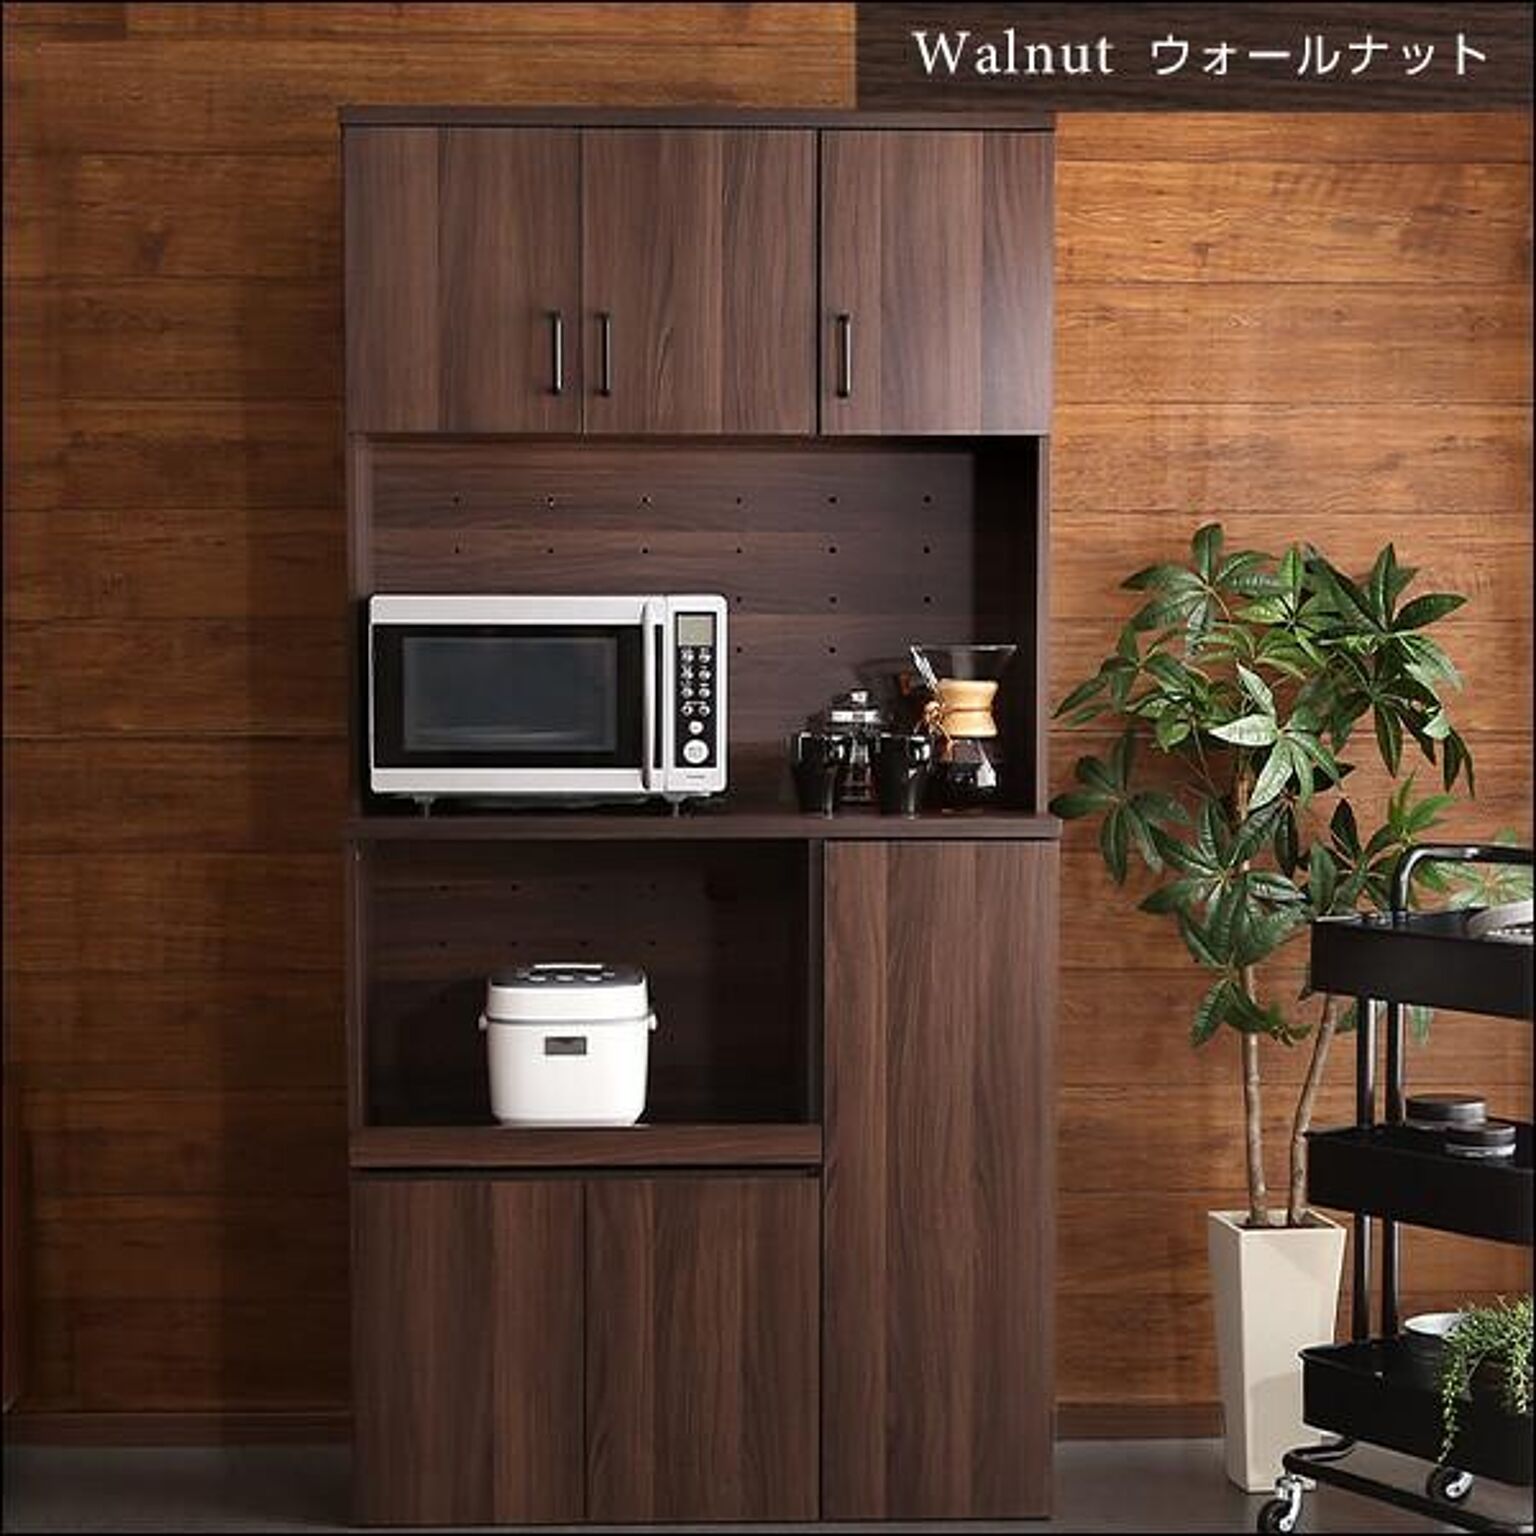 選ぶなら 大容量食器棚【Nasuta-ナスタ-】 大容量食器棚【Nasuta-ナスタ-】「キッチン収納 